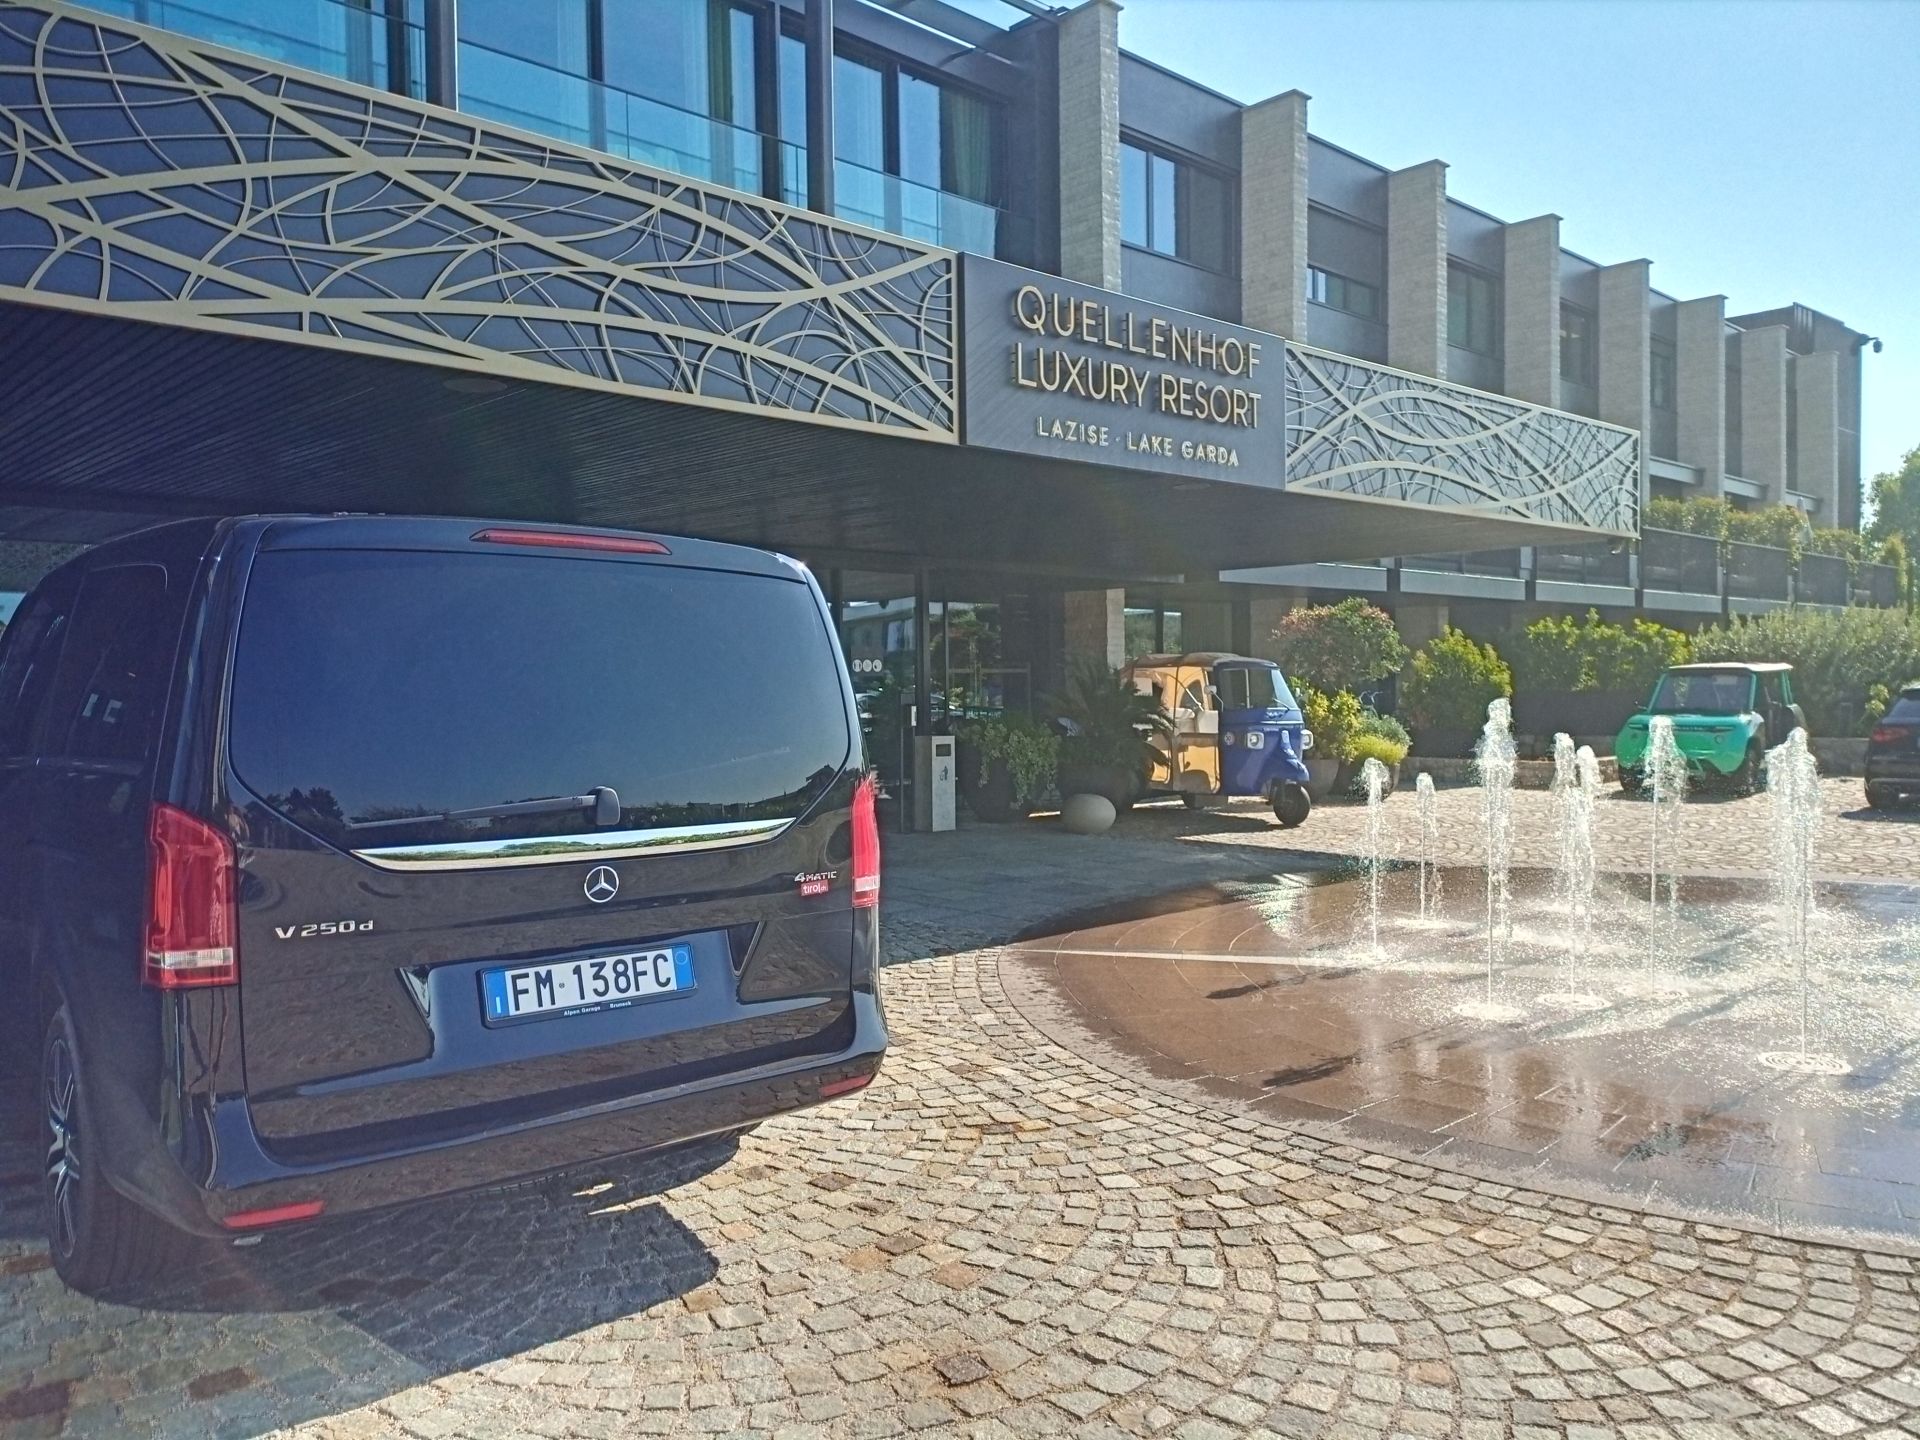 Quellenhof Luxury Resort - Eingang